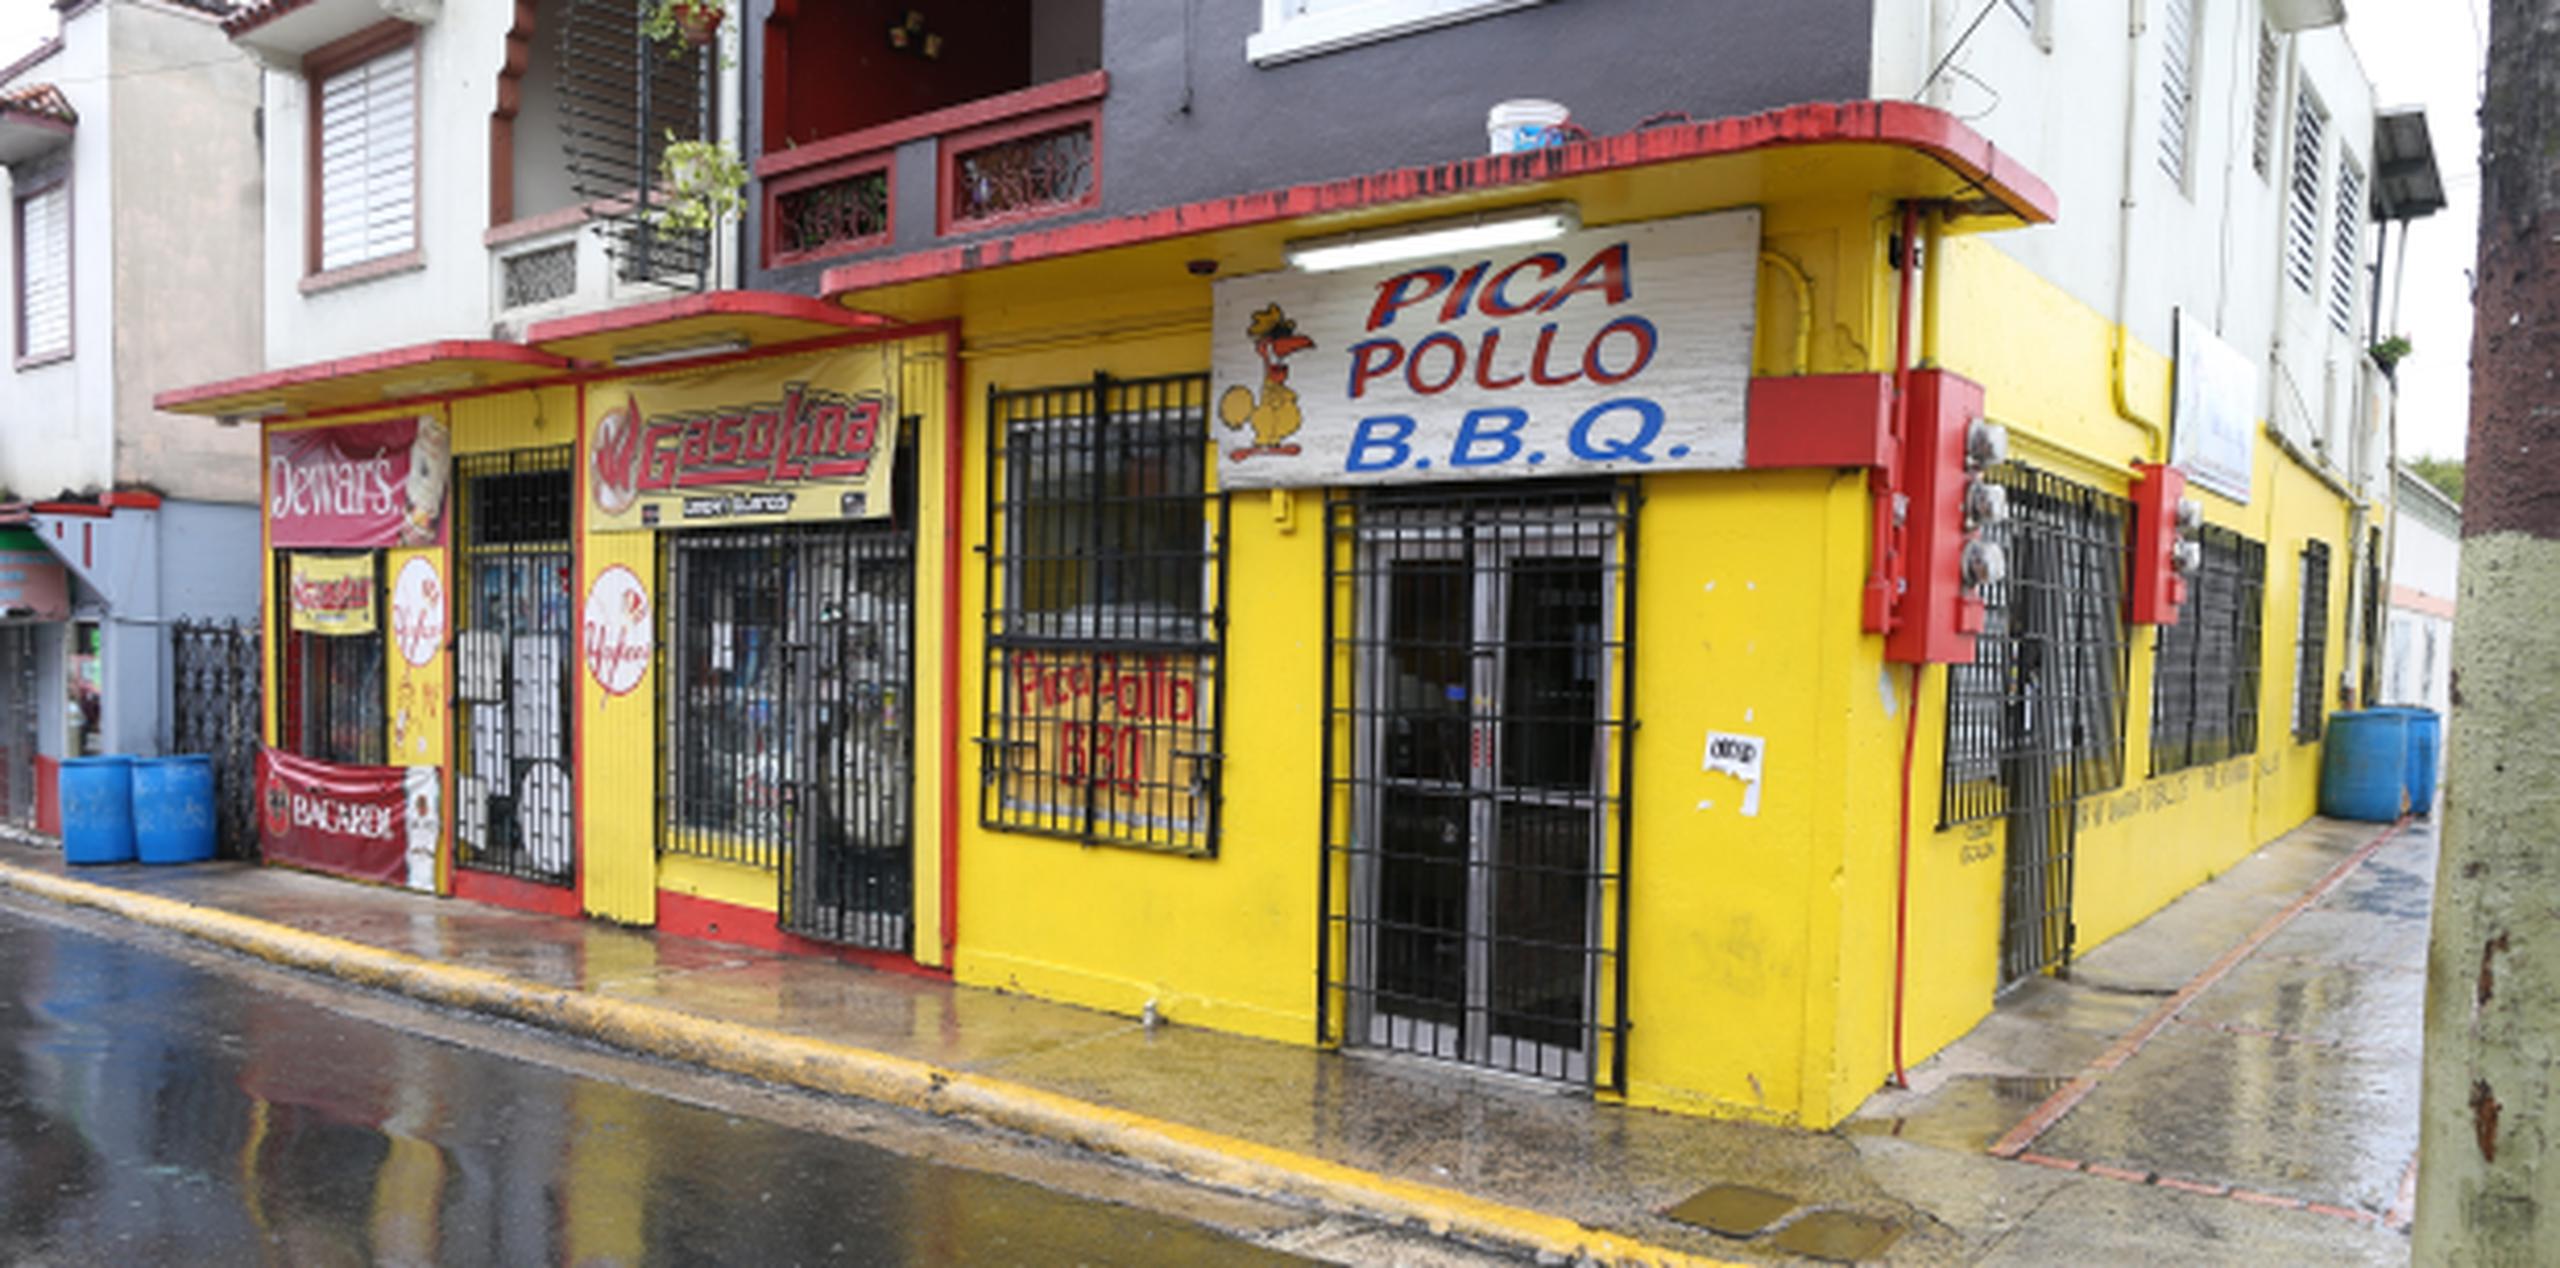 Durante la matanza, ocurrida el viernes en el negocio Pica Pollo y BBQ, murieron cuatro personas. (angel.rivera@gfrmedia.com)